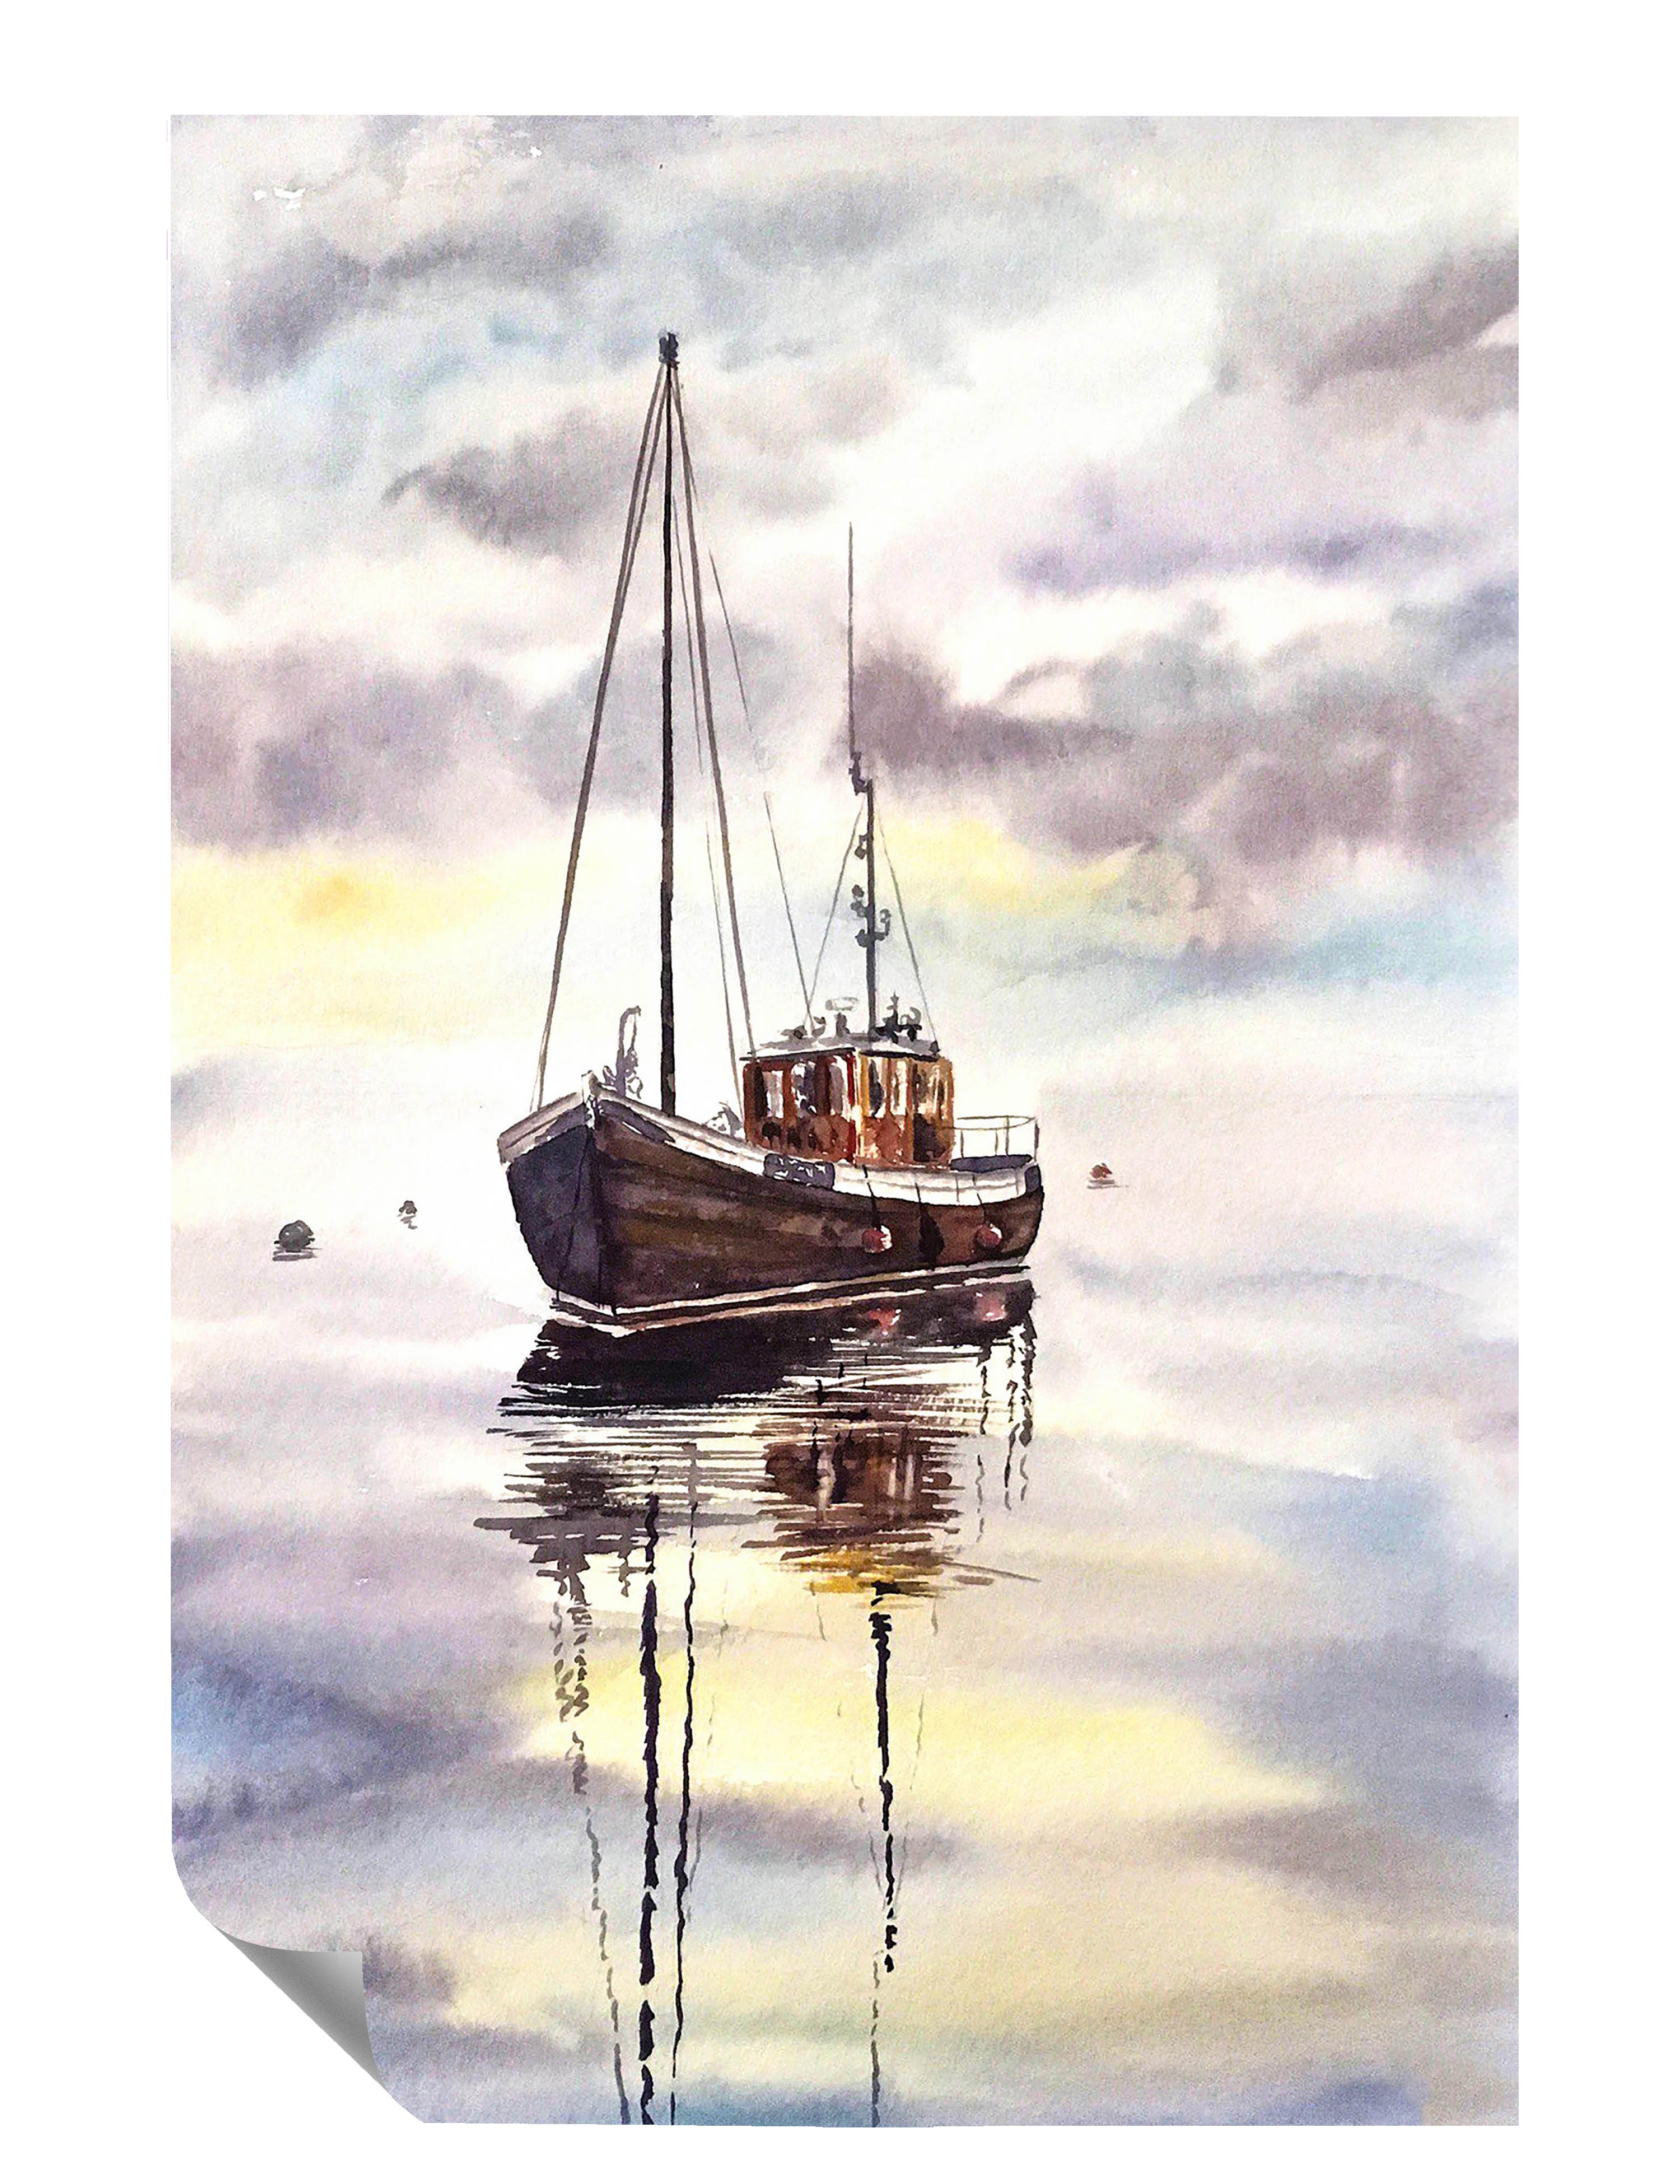 Aquarell-Optik Fischfangboot Meer Horizont Wolken Poster P0038